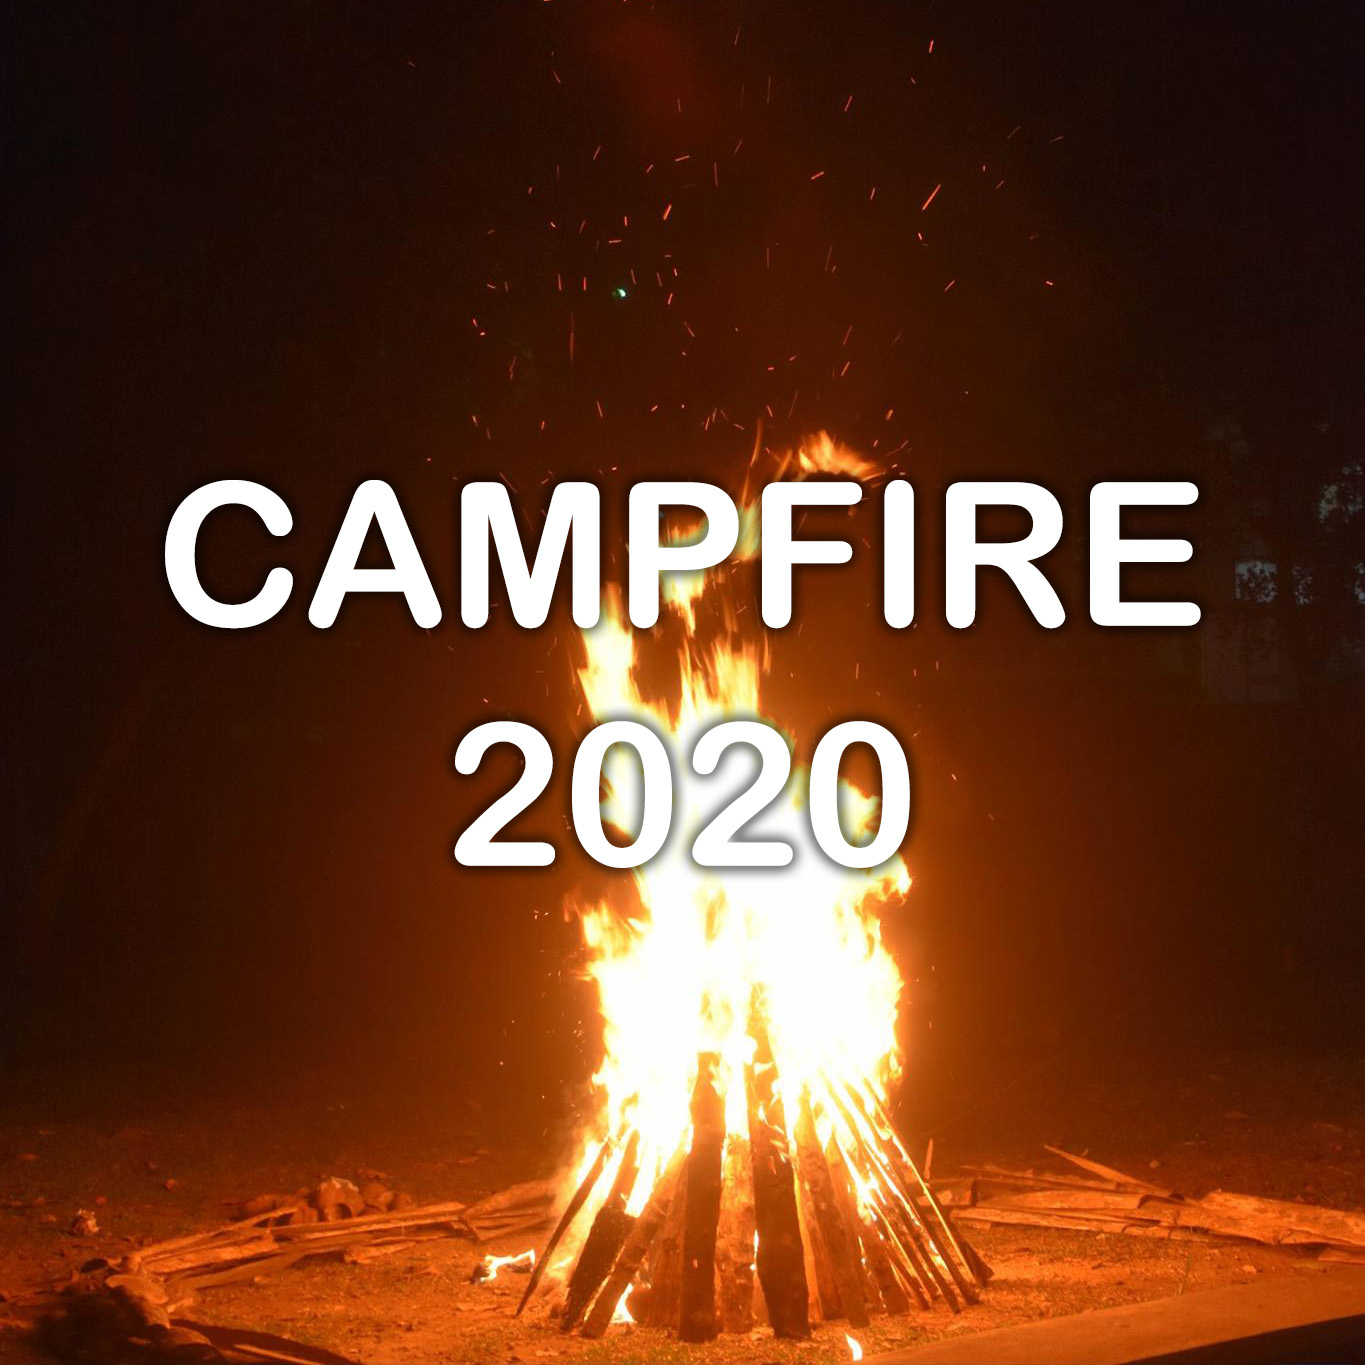 Camp Fire 2020